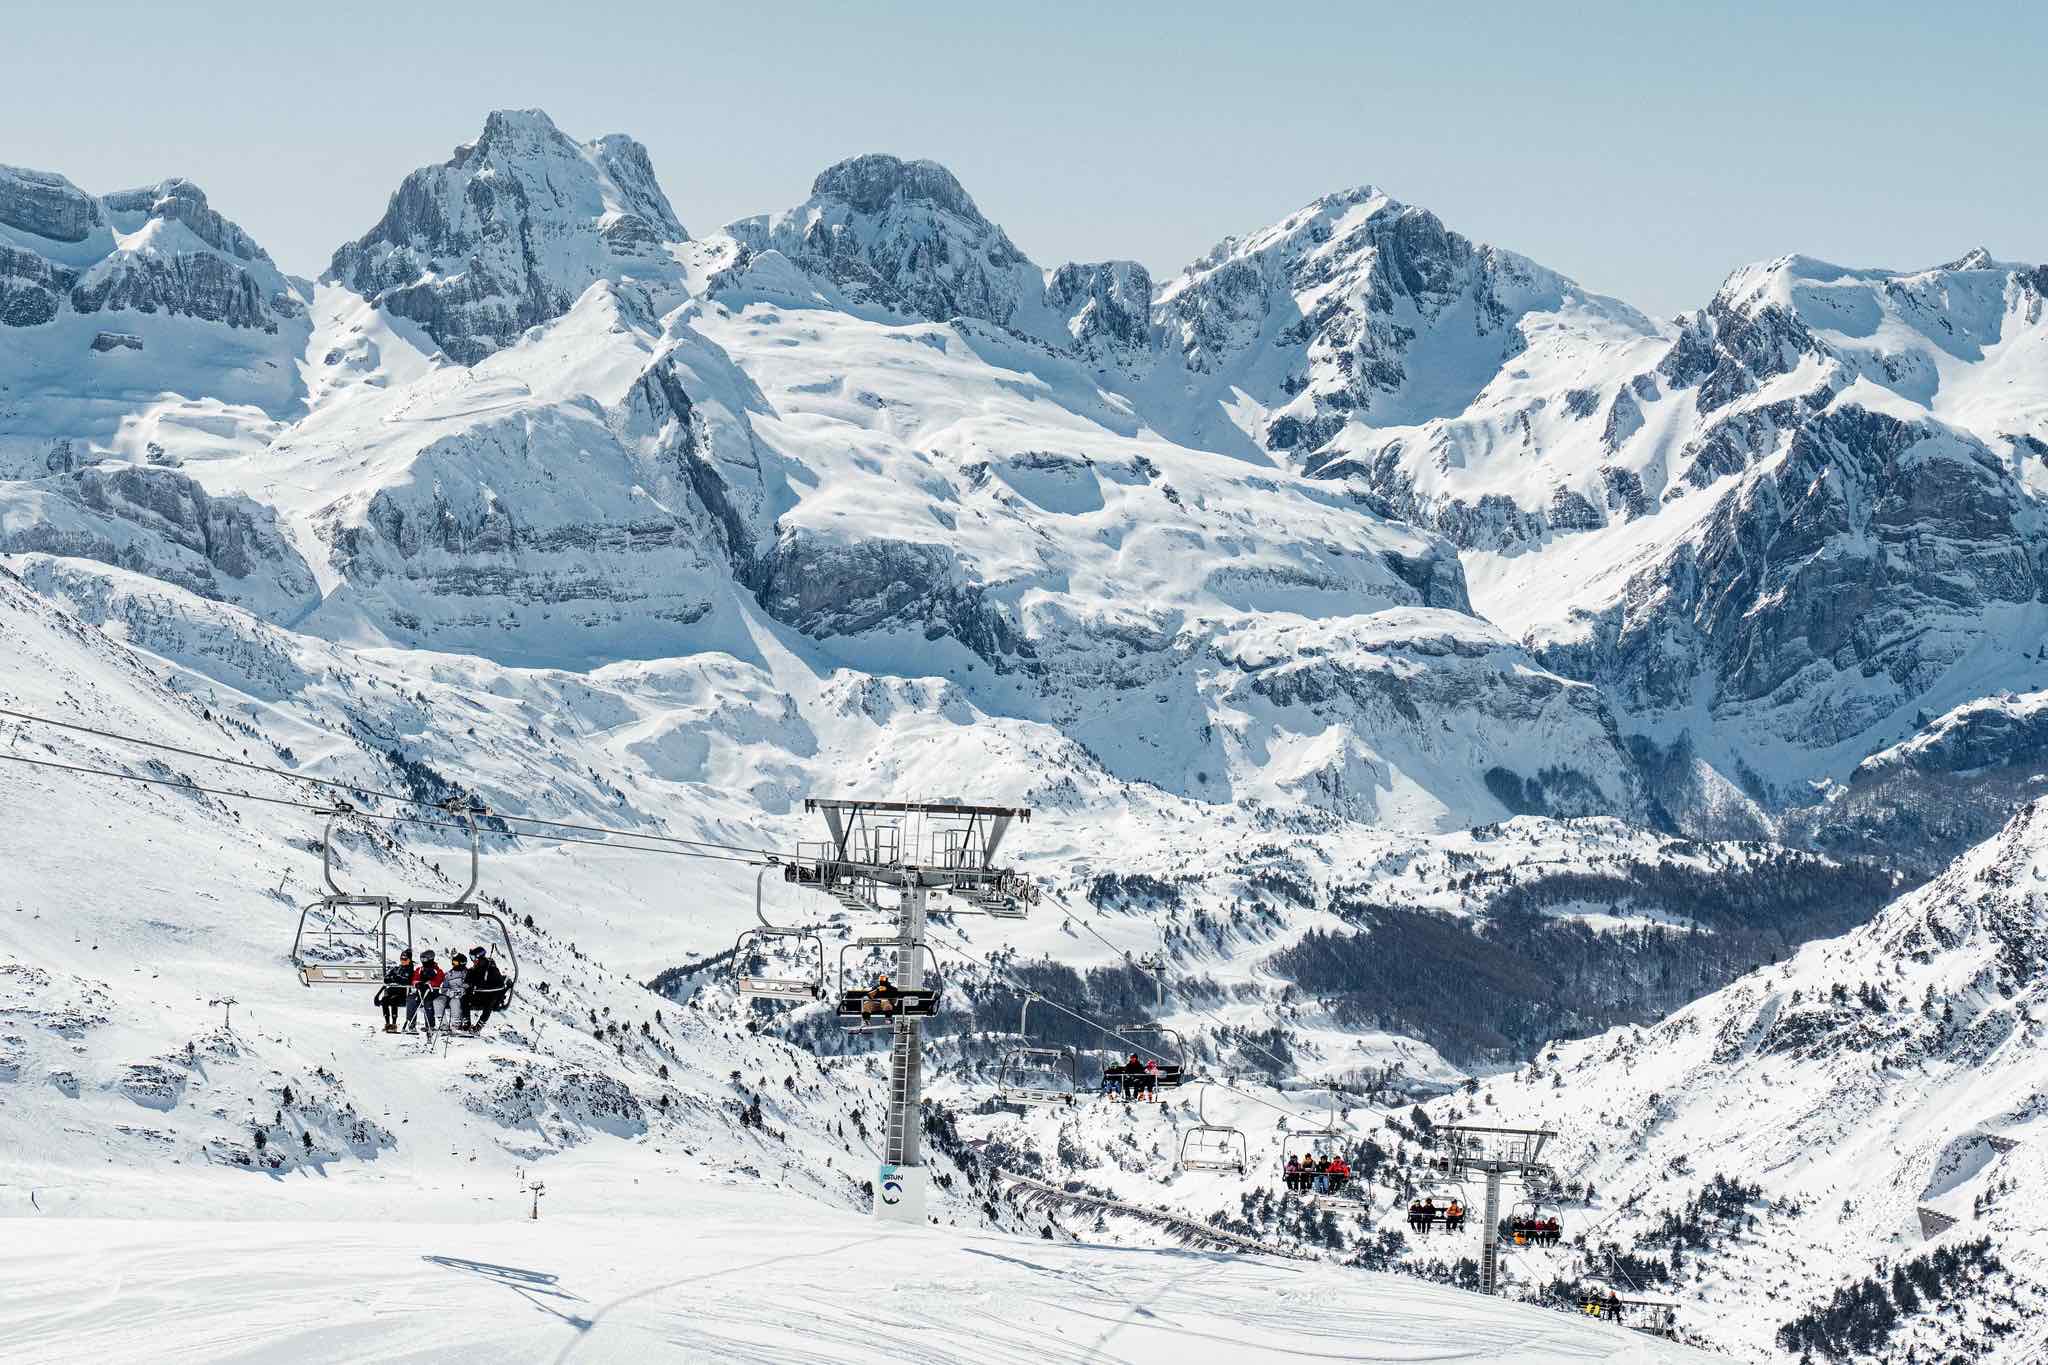 Candanchú deberá pagar al valle por explotar sus pistas de esquí la temporada 20-21